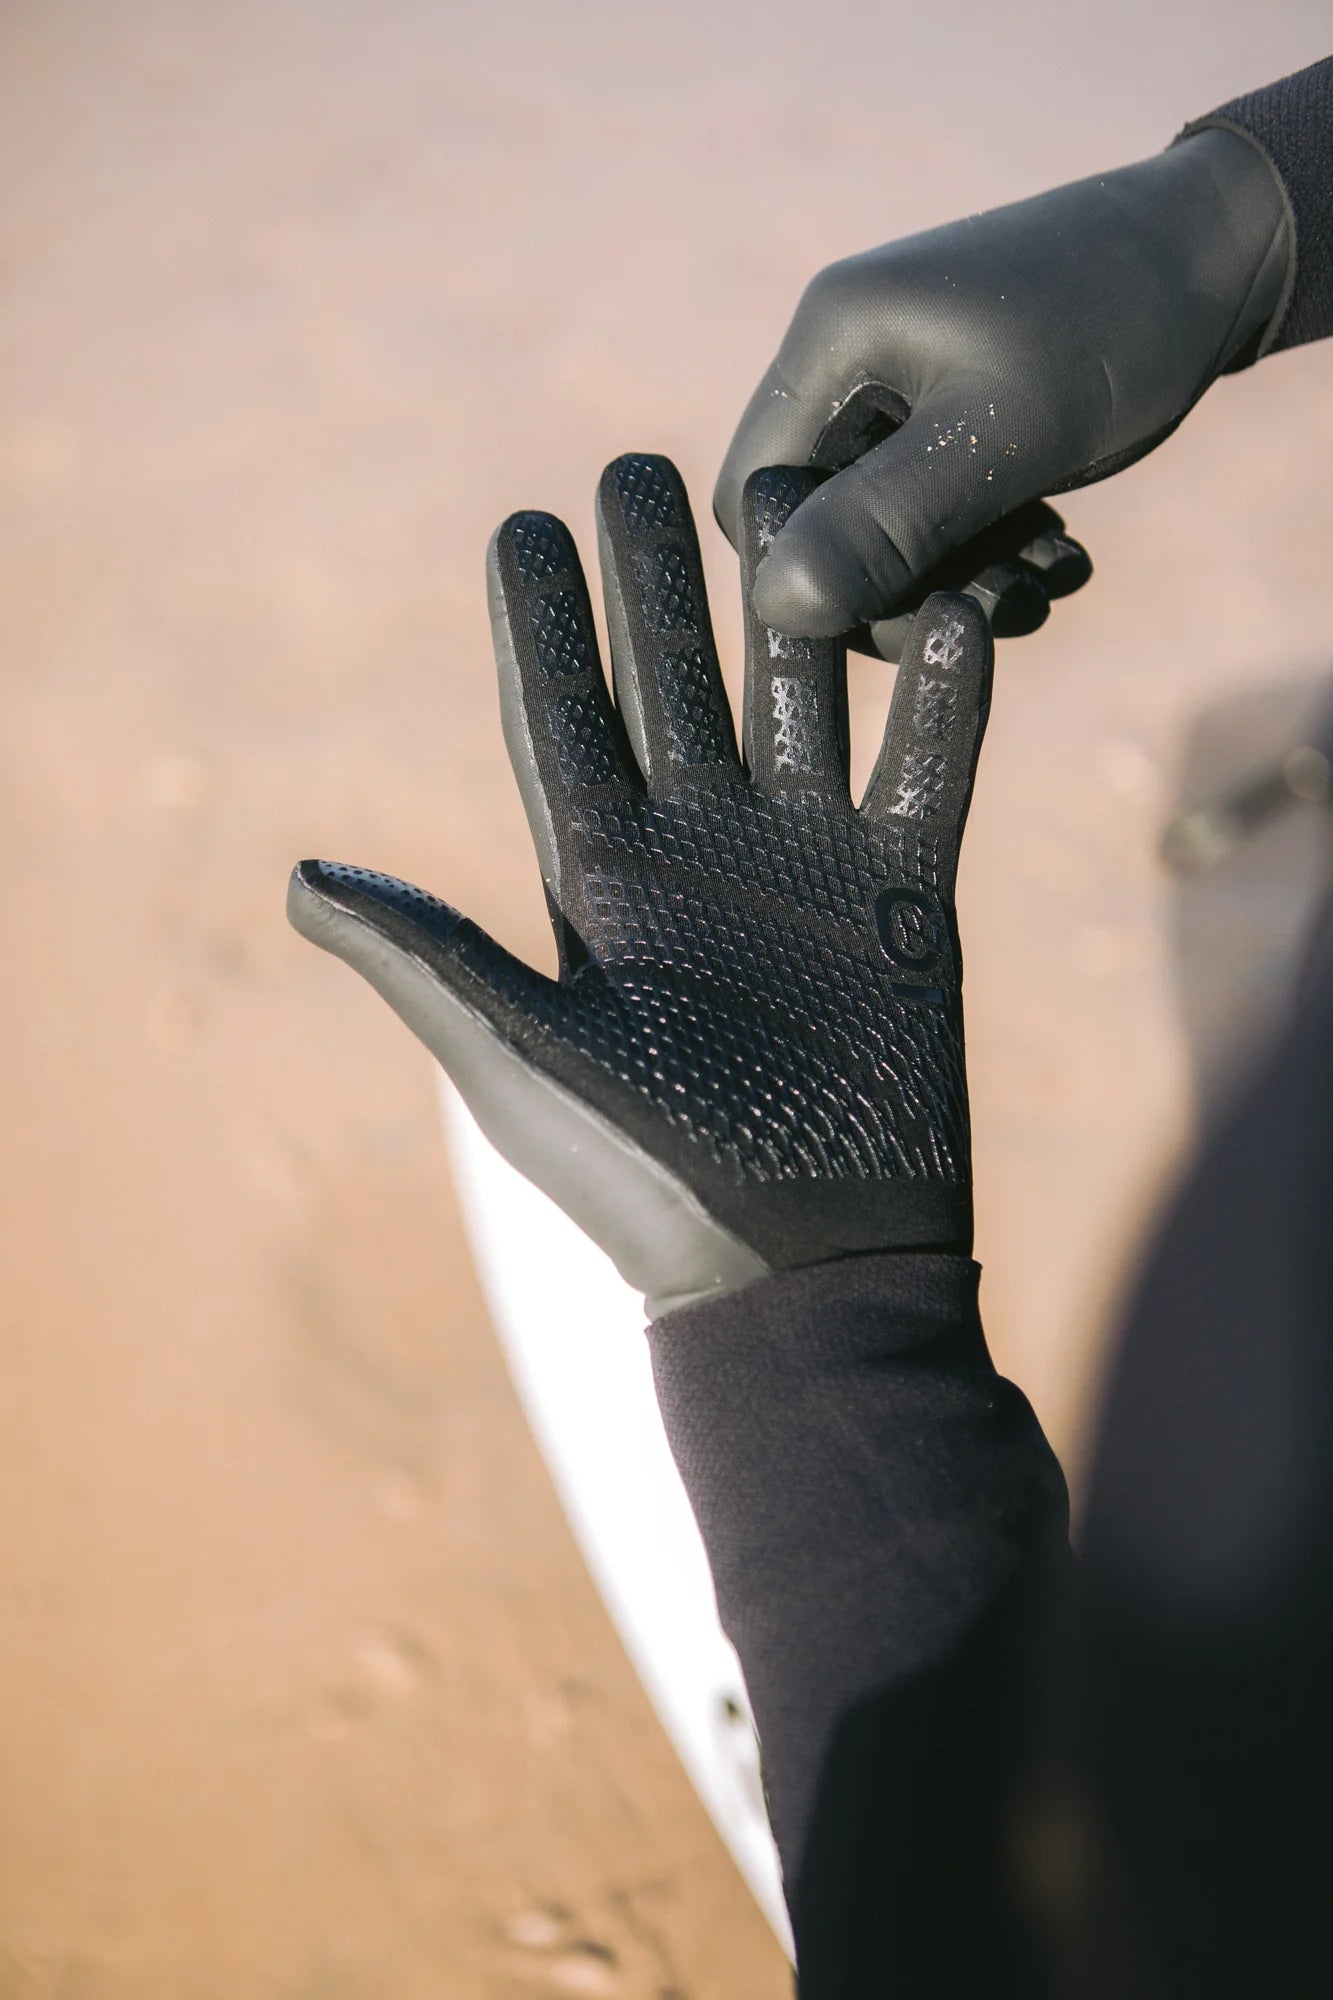 C-Skins Session 3mm Gloves - Black